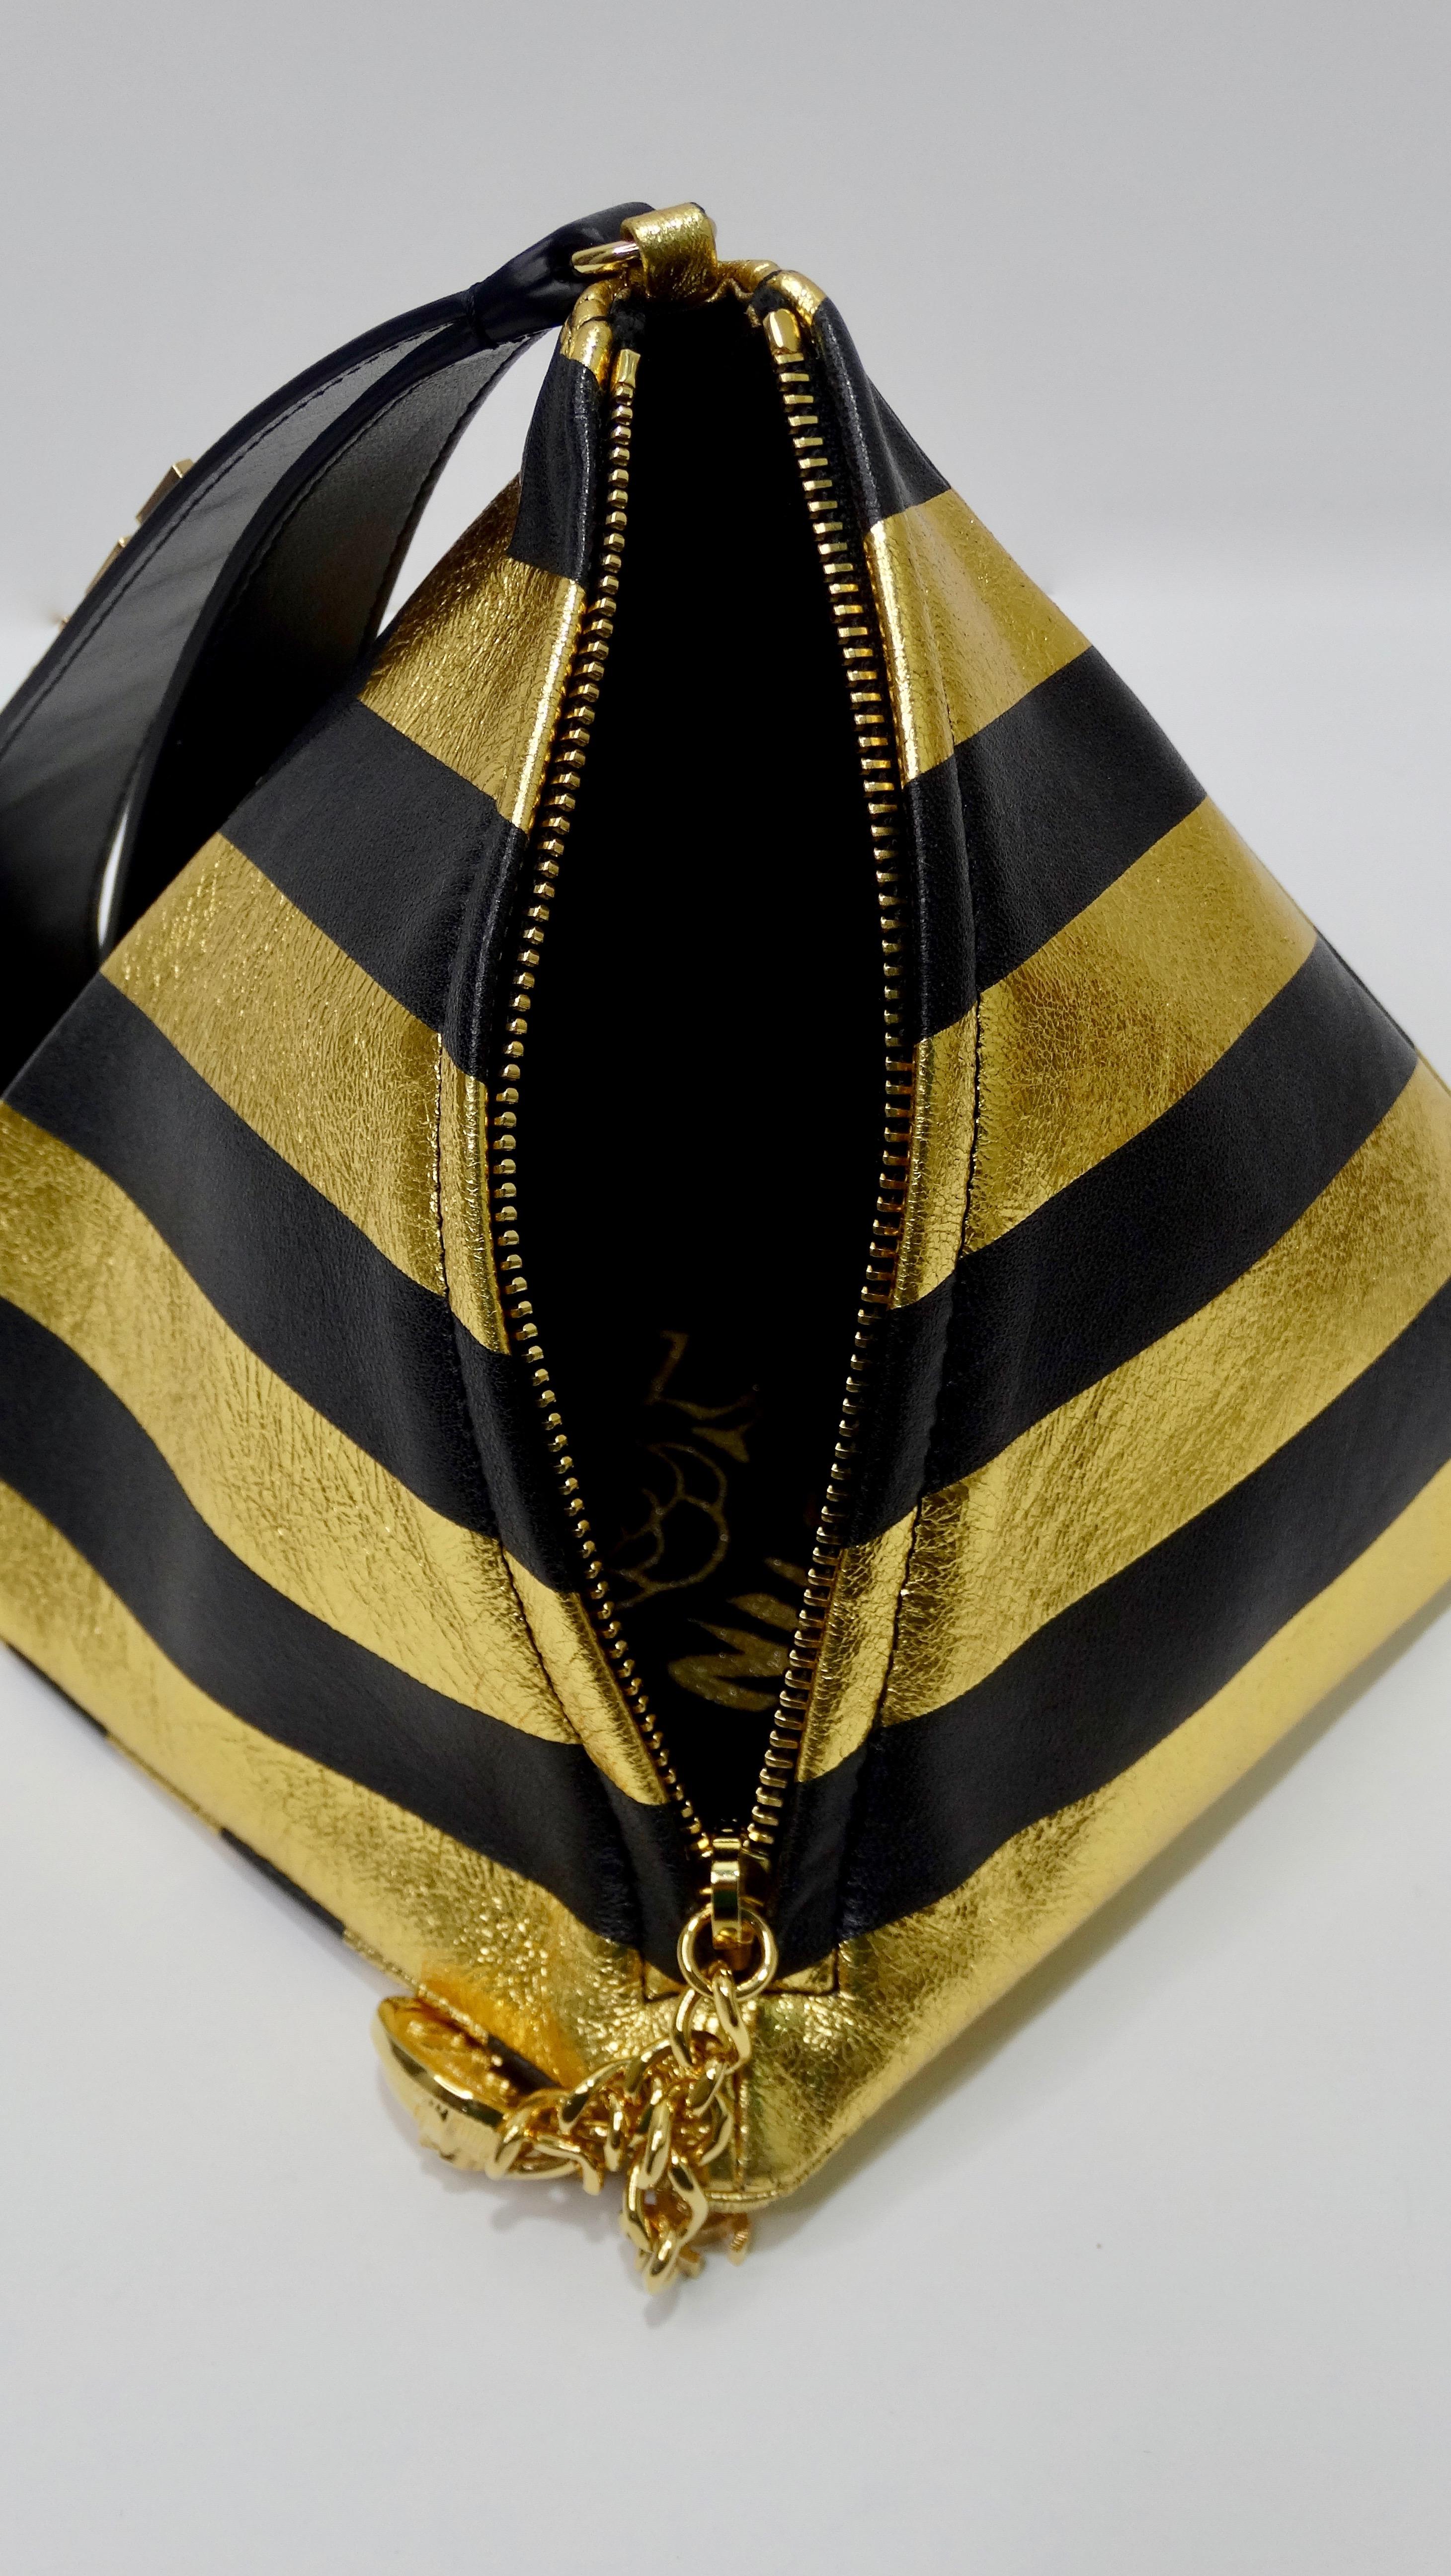 Black Chanel 2019 Pre-Fall Kheops Pyramid Handbag